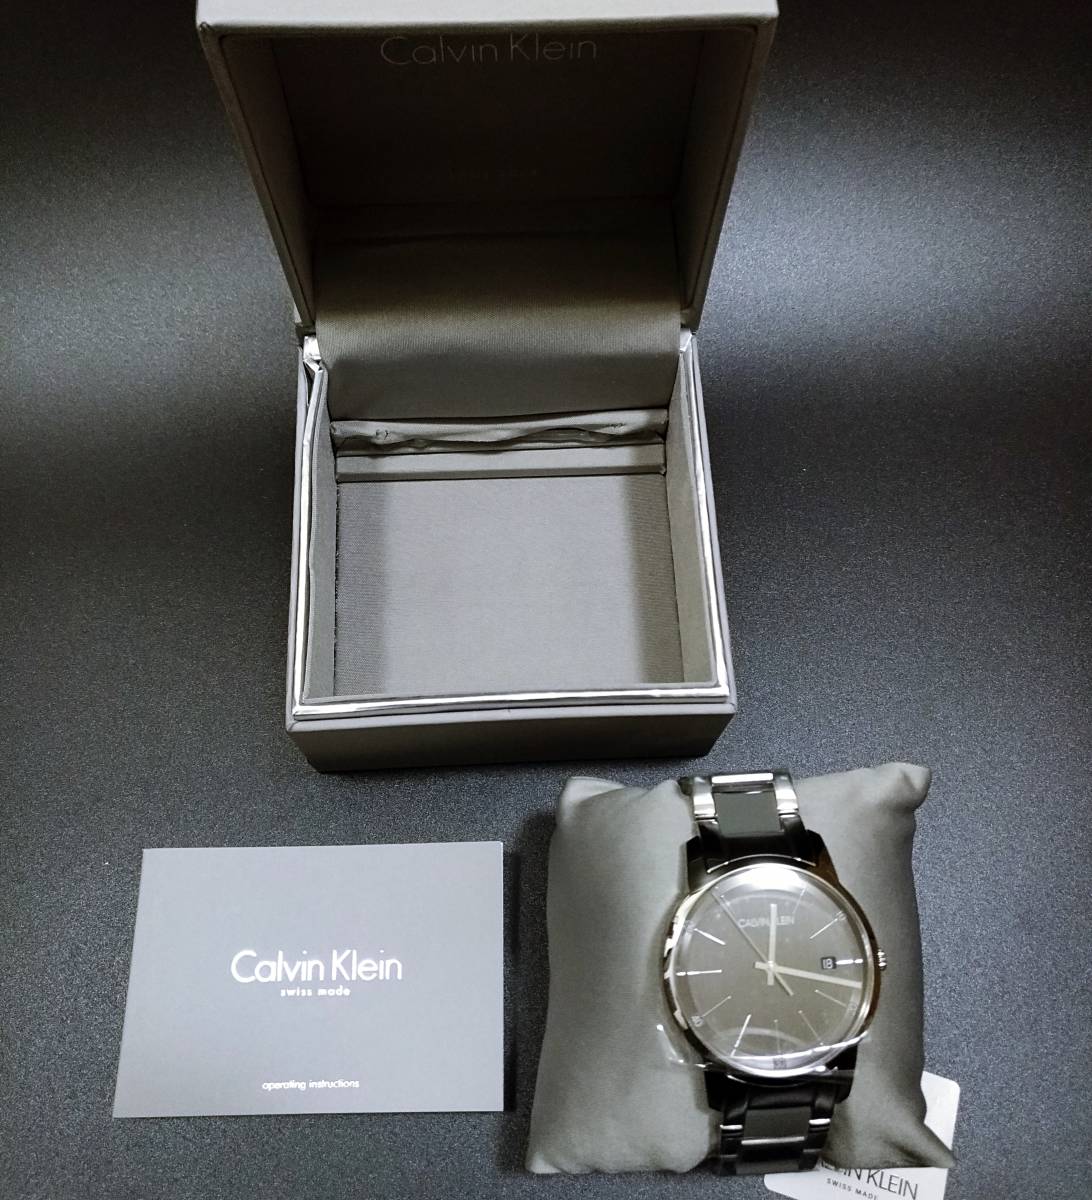 オンラインストア入荷 【送料無料】カルバンクライン 腕時計 43mm スイス製 グレー メンズ Calvin Klein ダイヤル ステンレススチール シリコン レディース